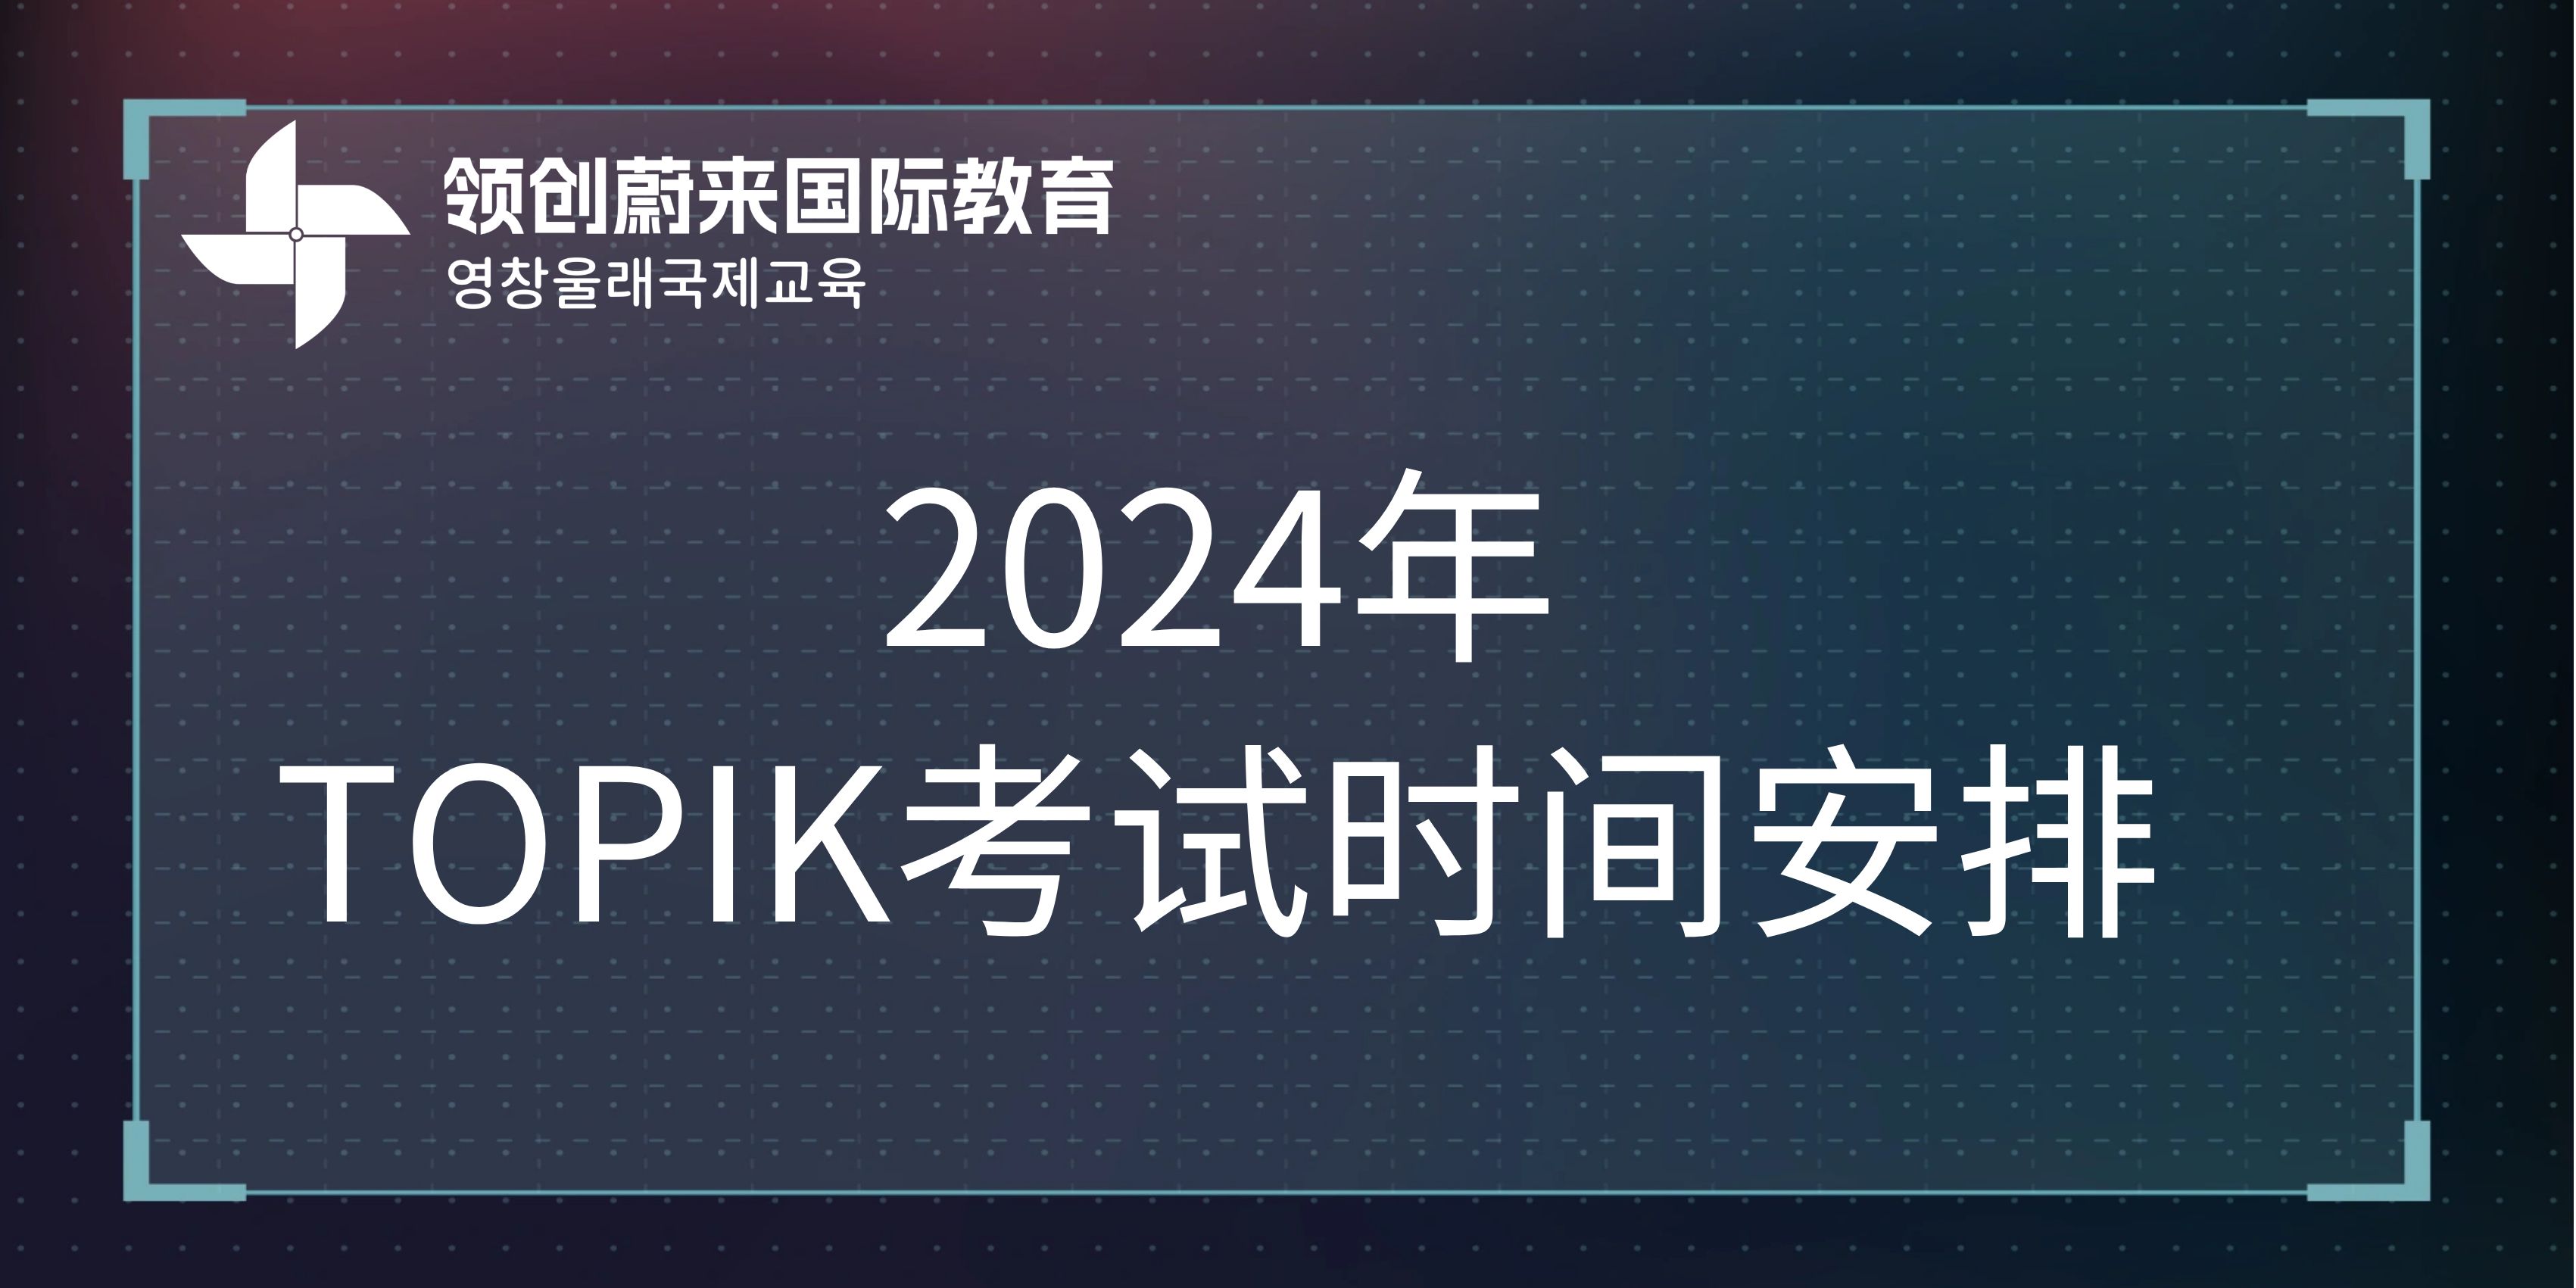 2024年TOPIK考试时间安排.jpg